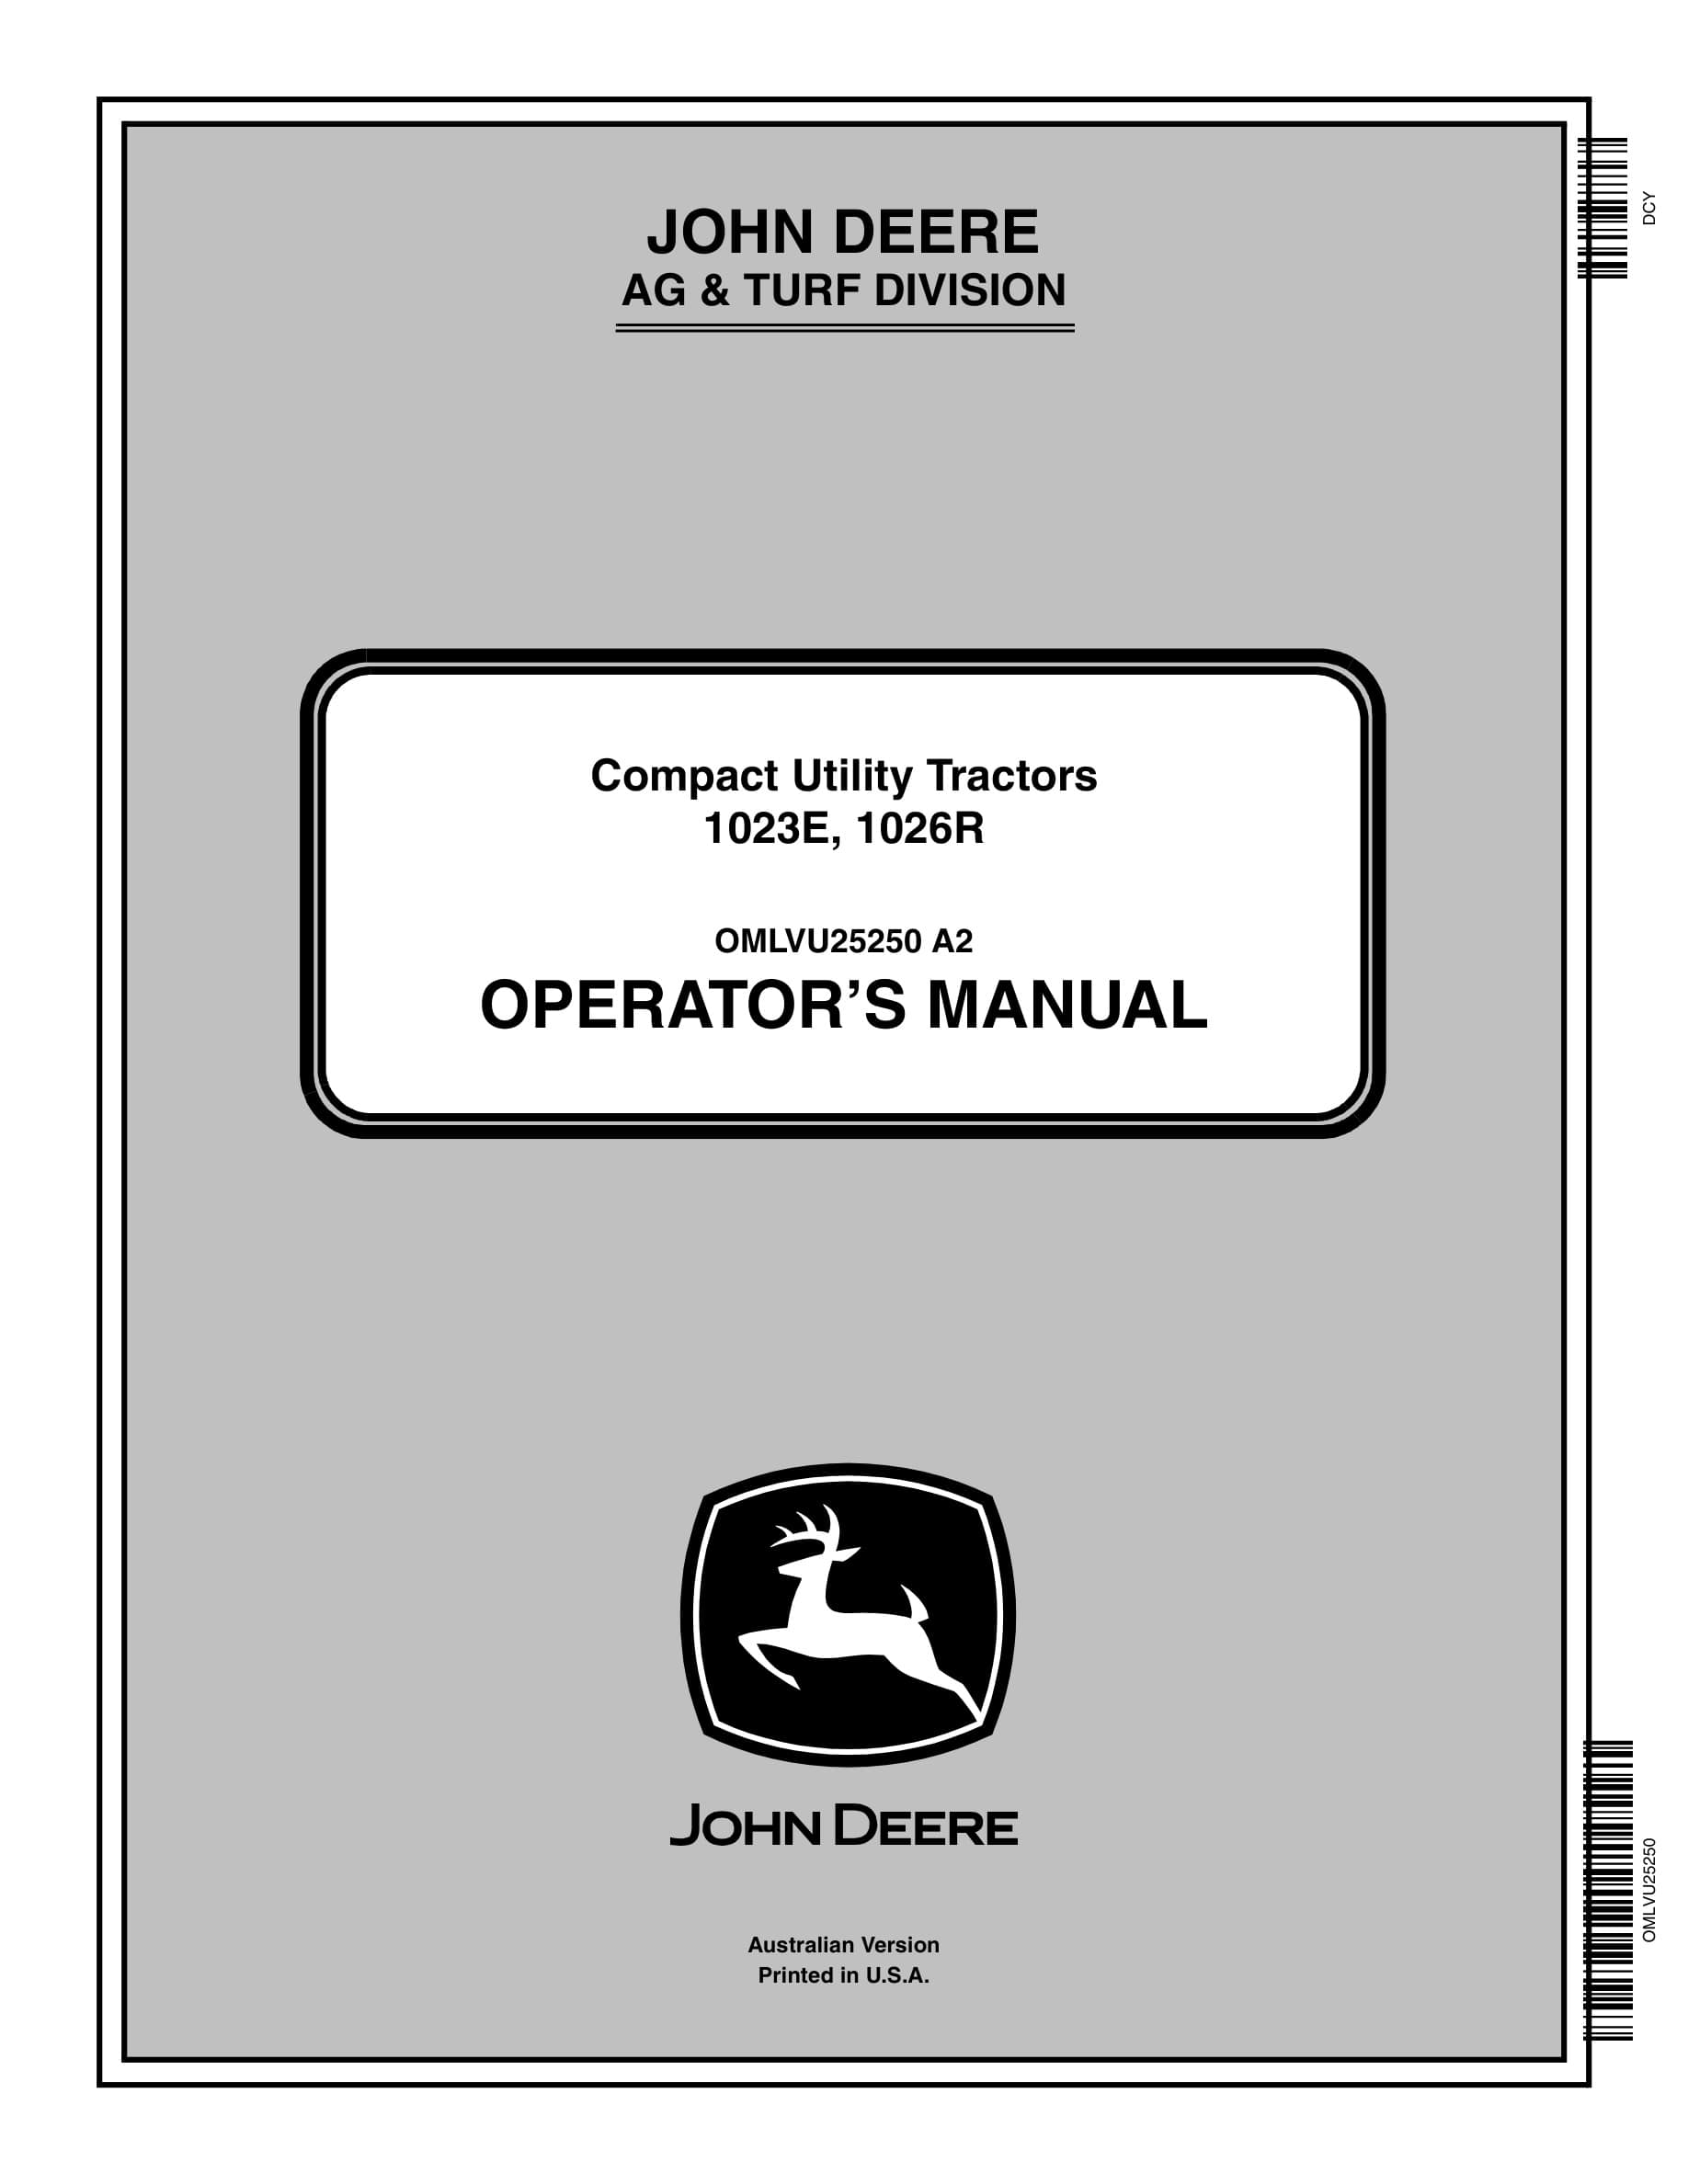 John Deere 1023e, 1026r Compact Utility Tractors Operator Manuals OMLVU25250-1